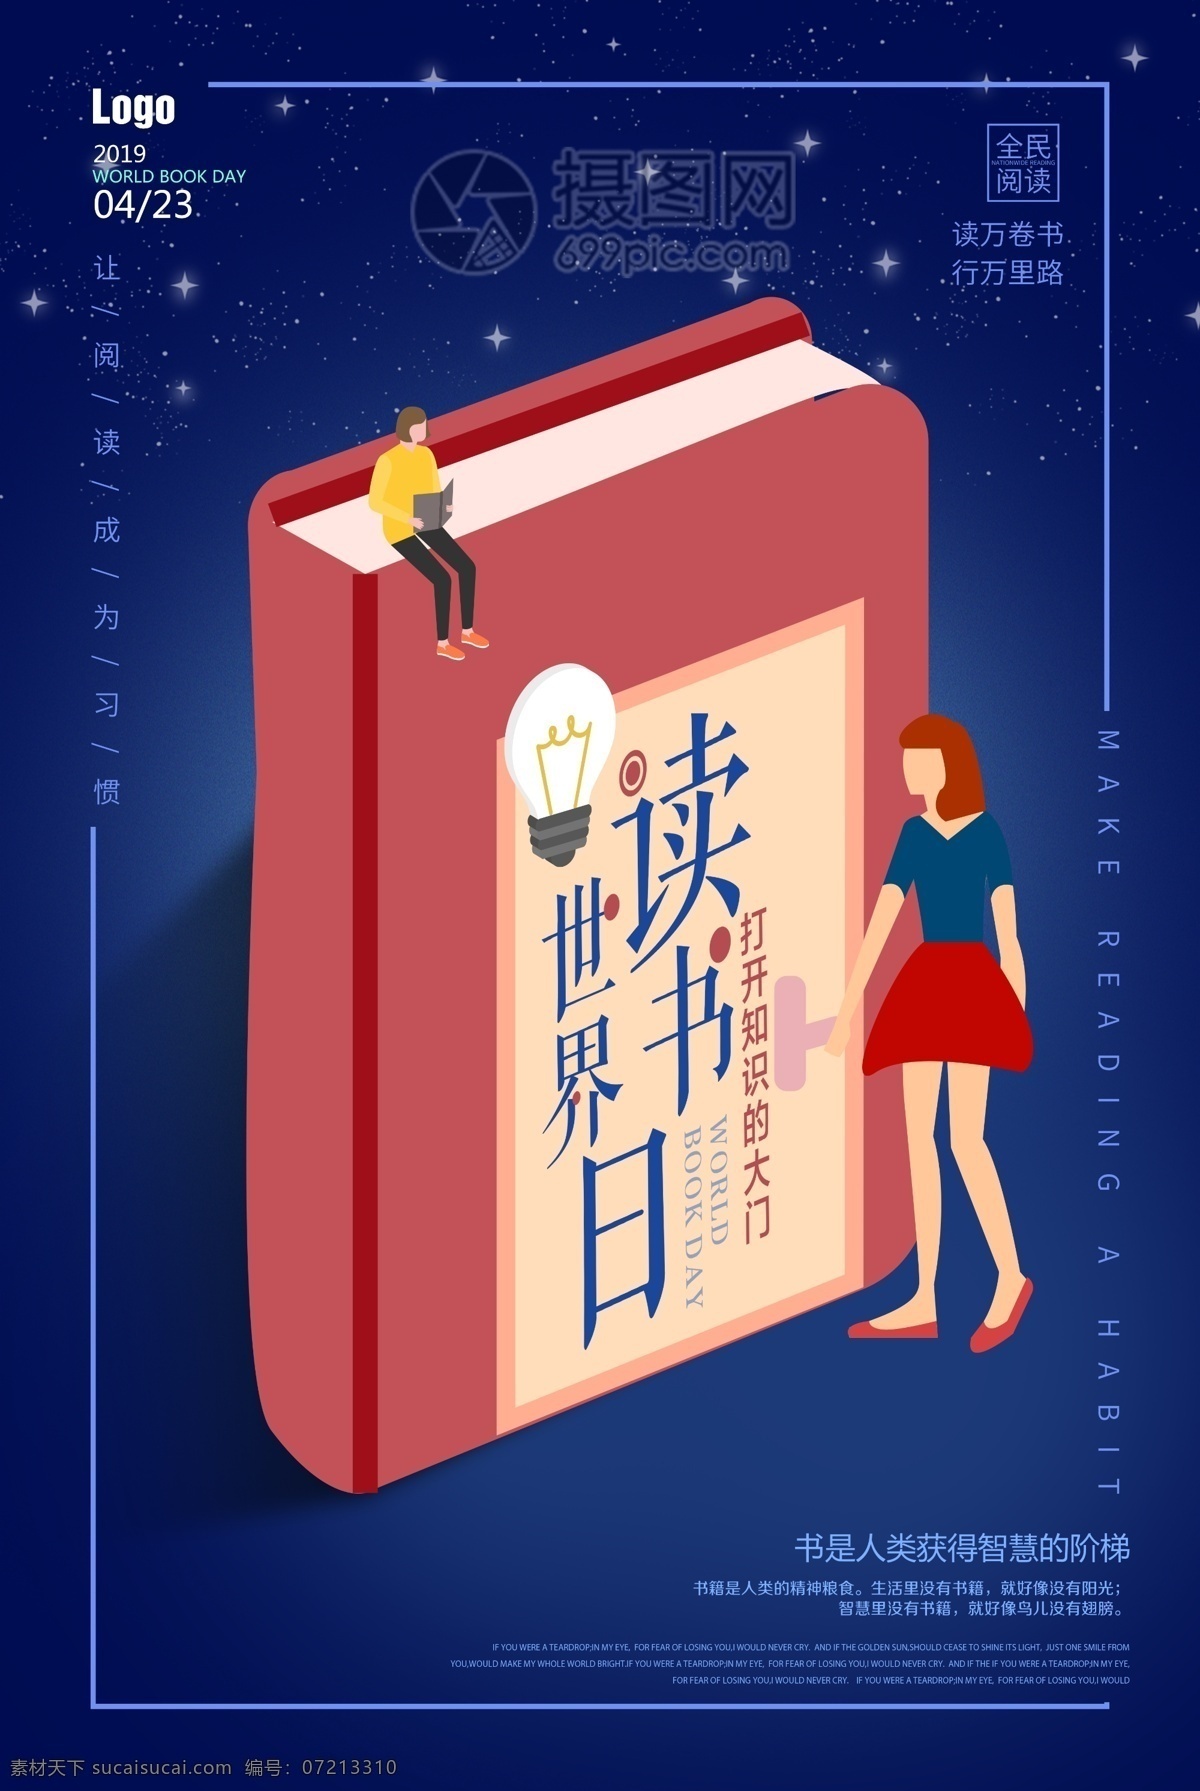 蓝色 创意 简约 世界 图书 日 海报 世界图书日 读书 看书的女孩 星空 阅读 书本 知识